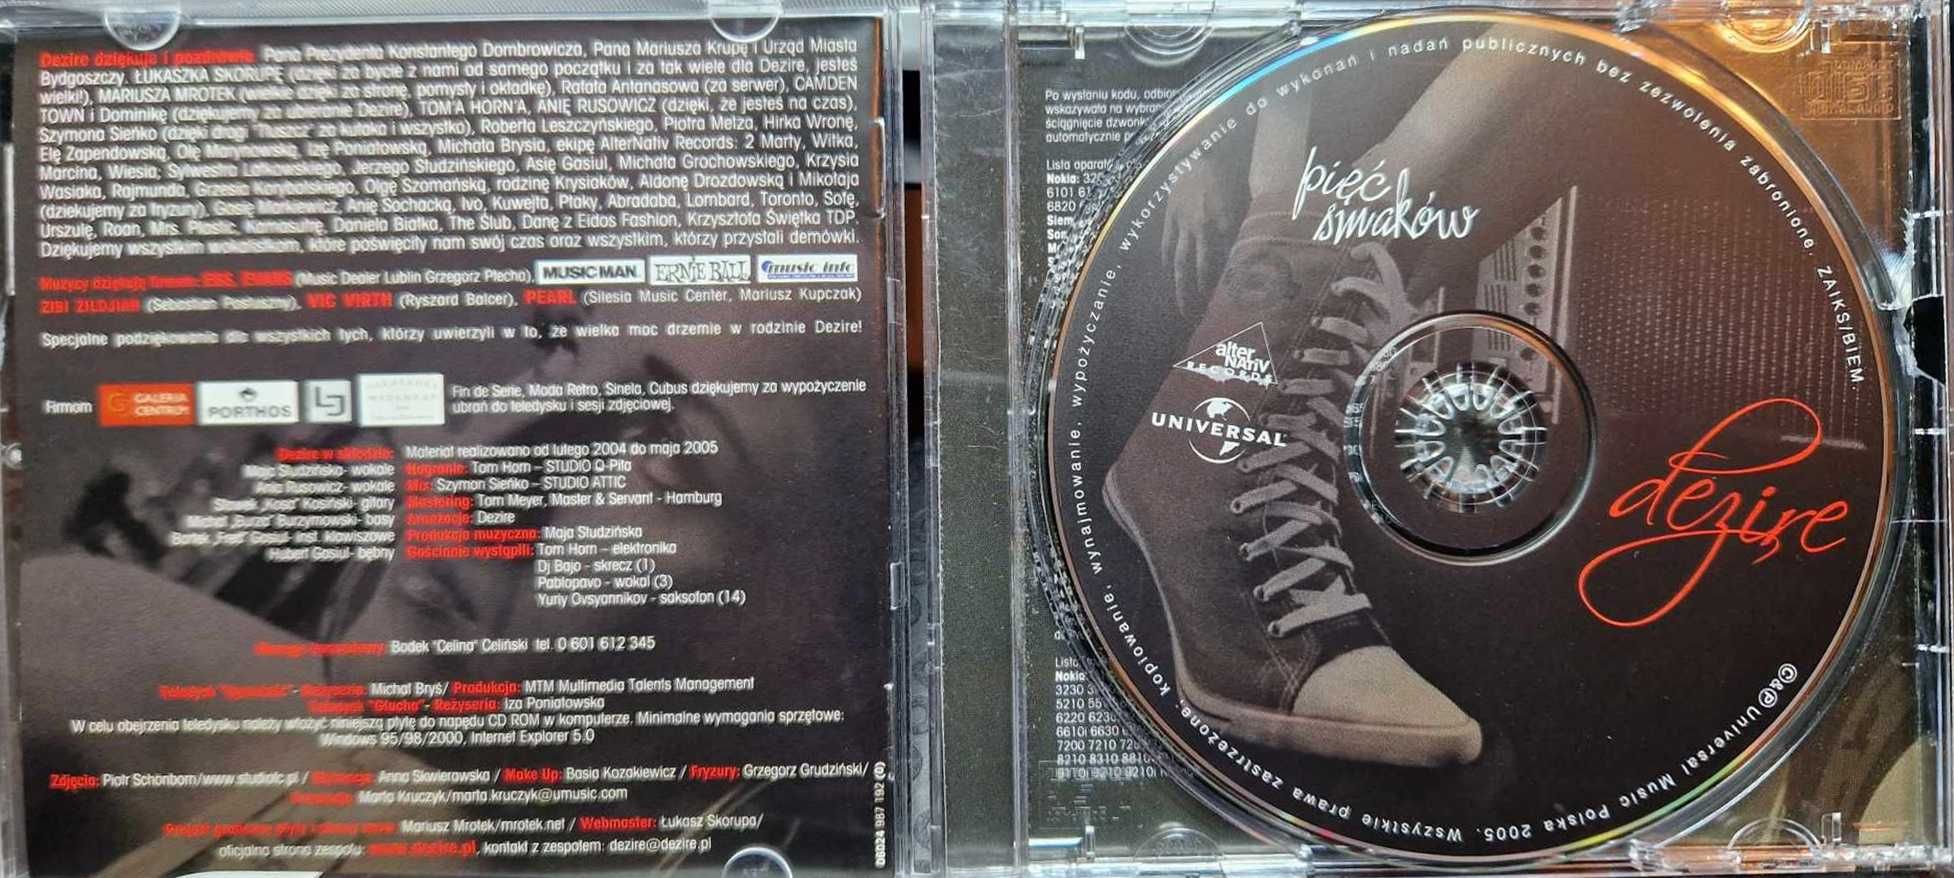 DEZIRE Pięć Smaków CD